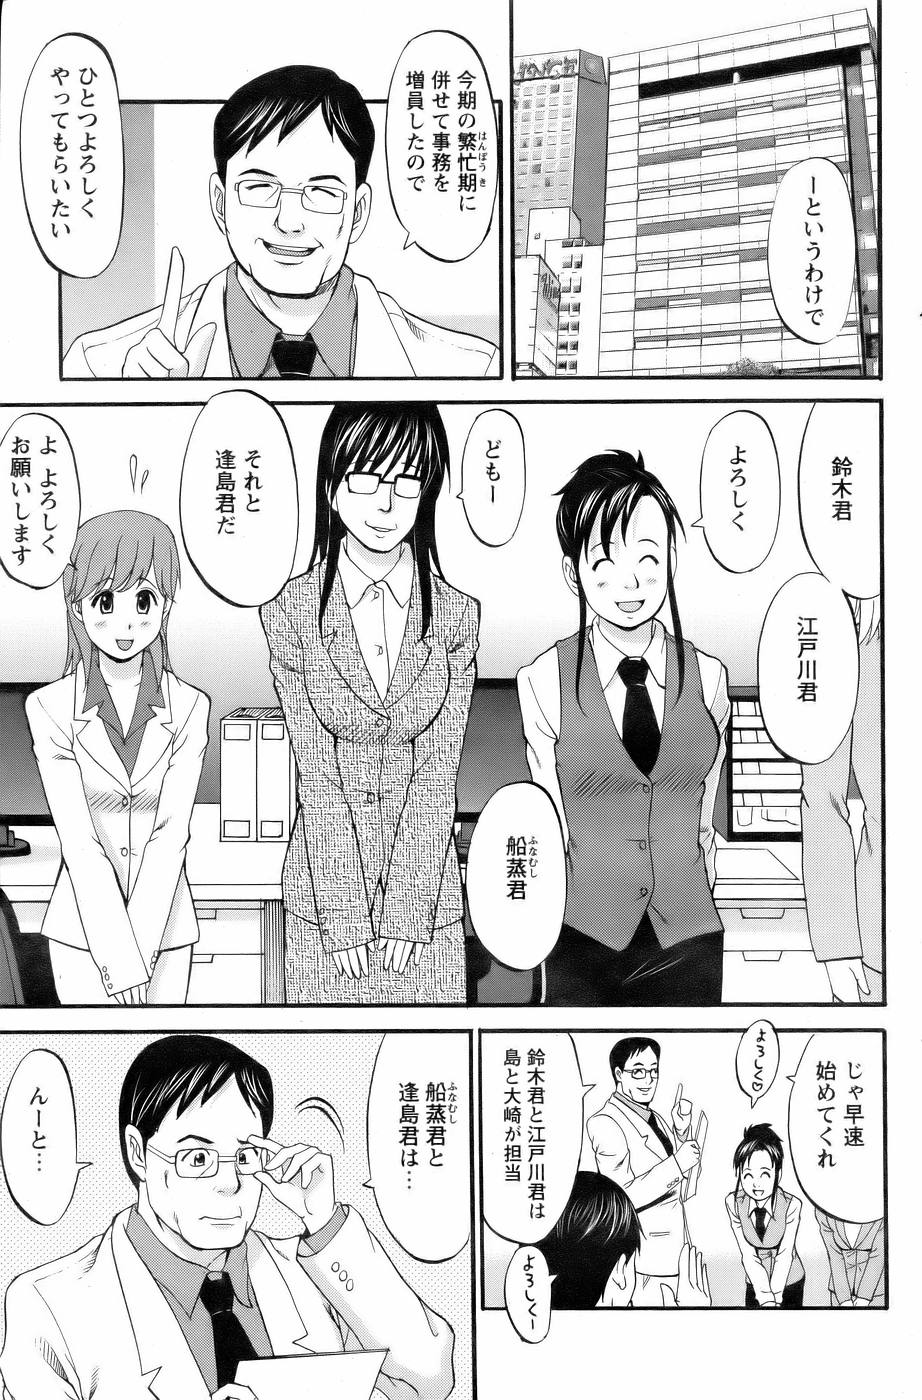 [Saigado] Haken no Muuko San 3 page 6 full